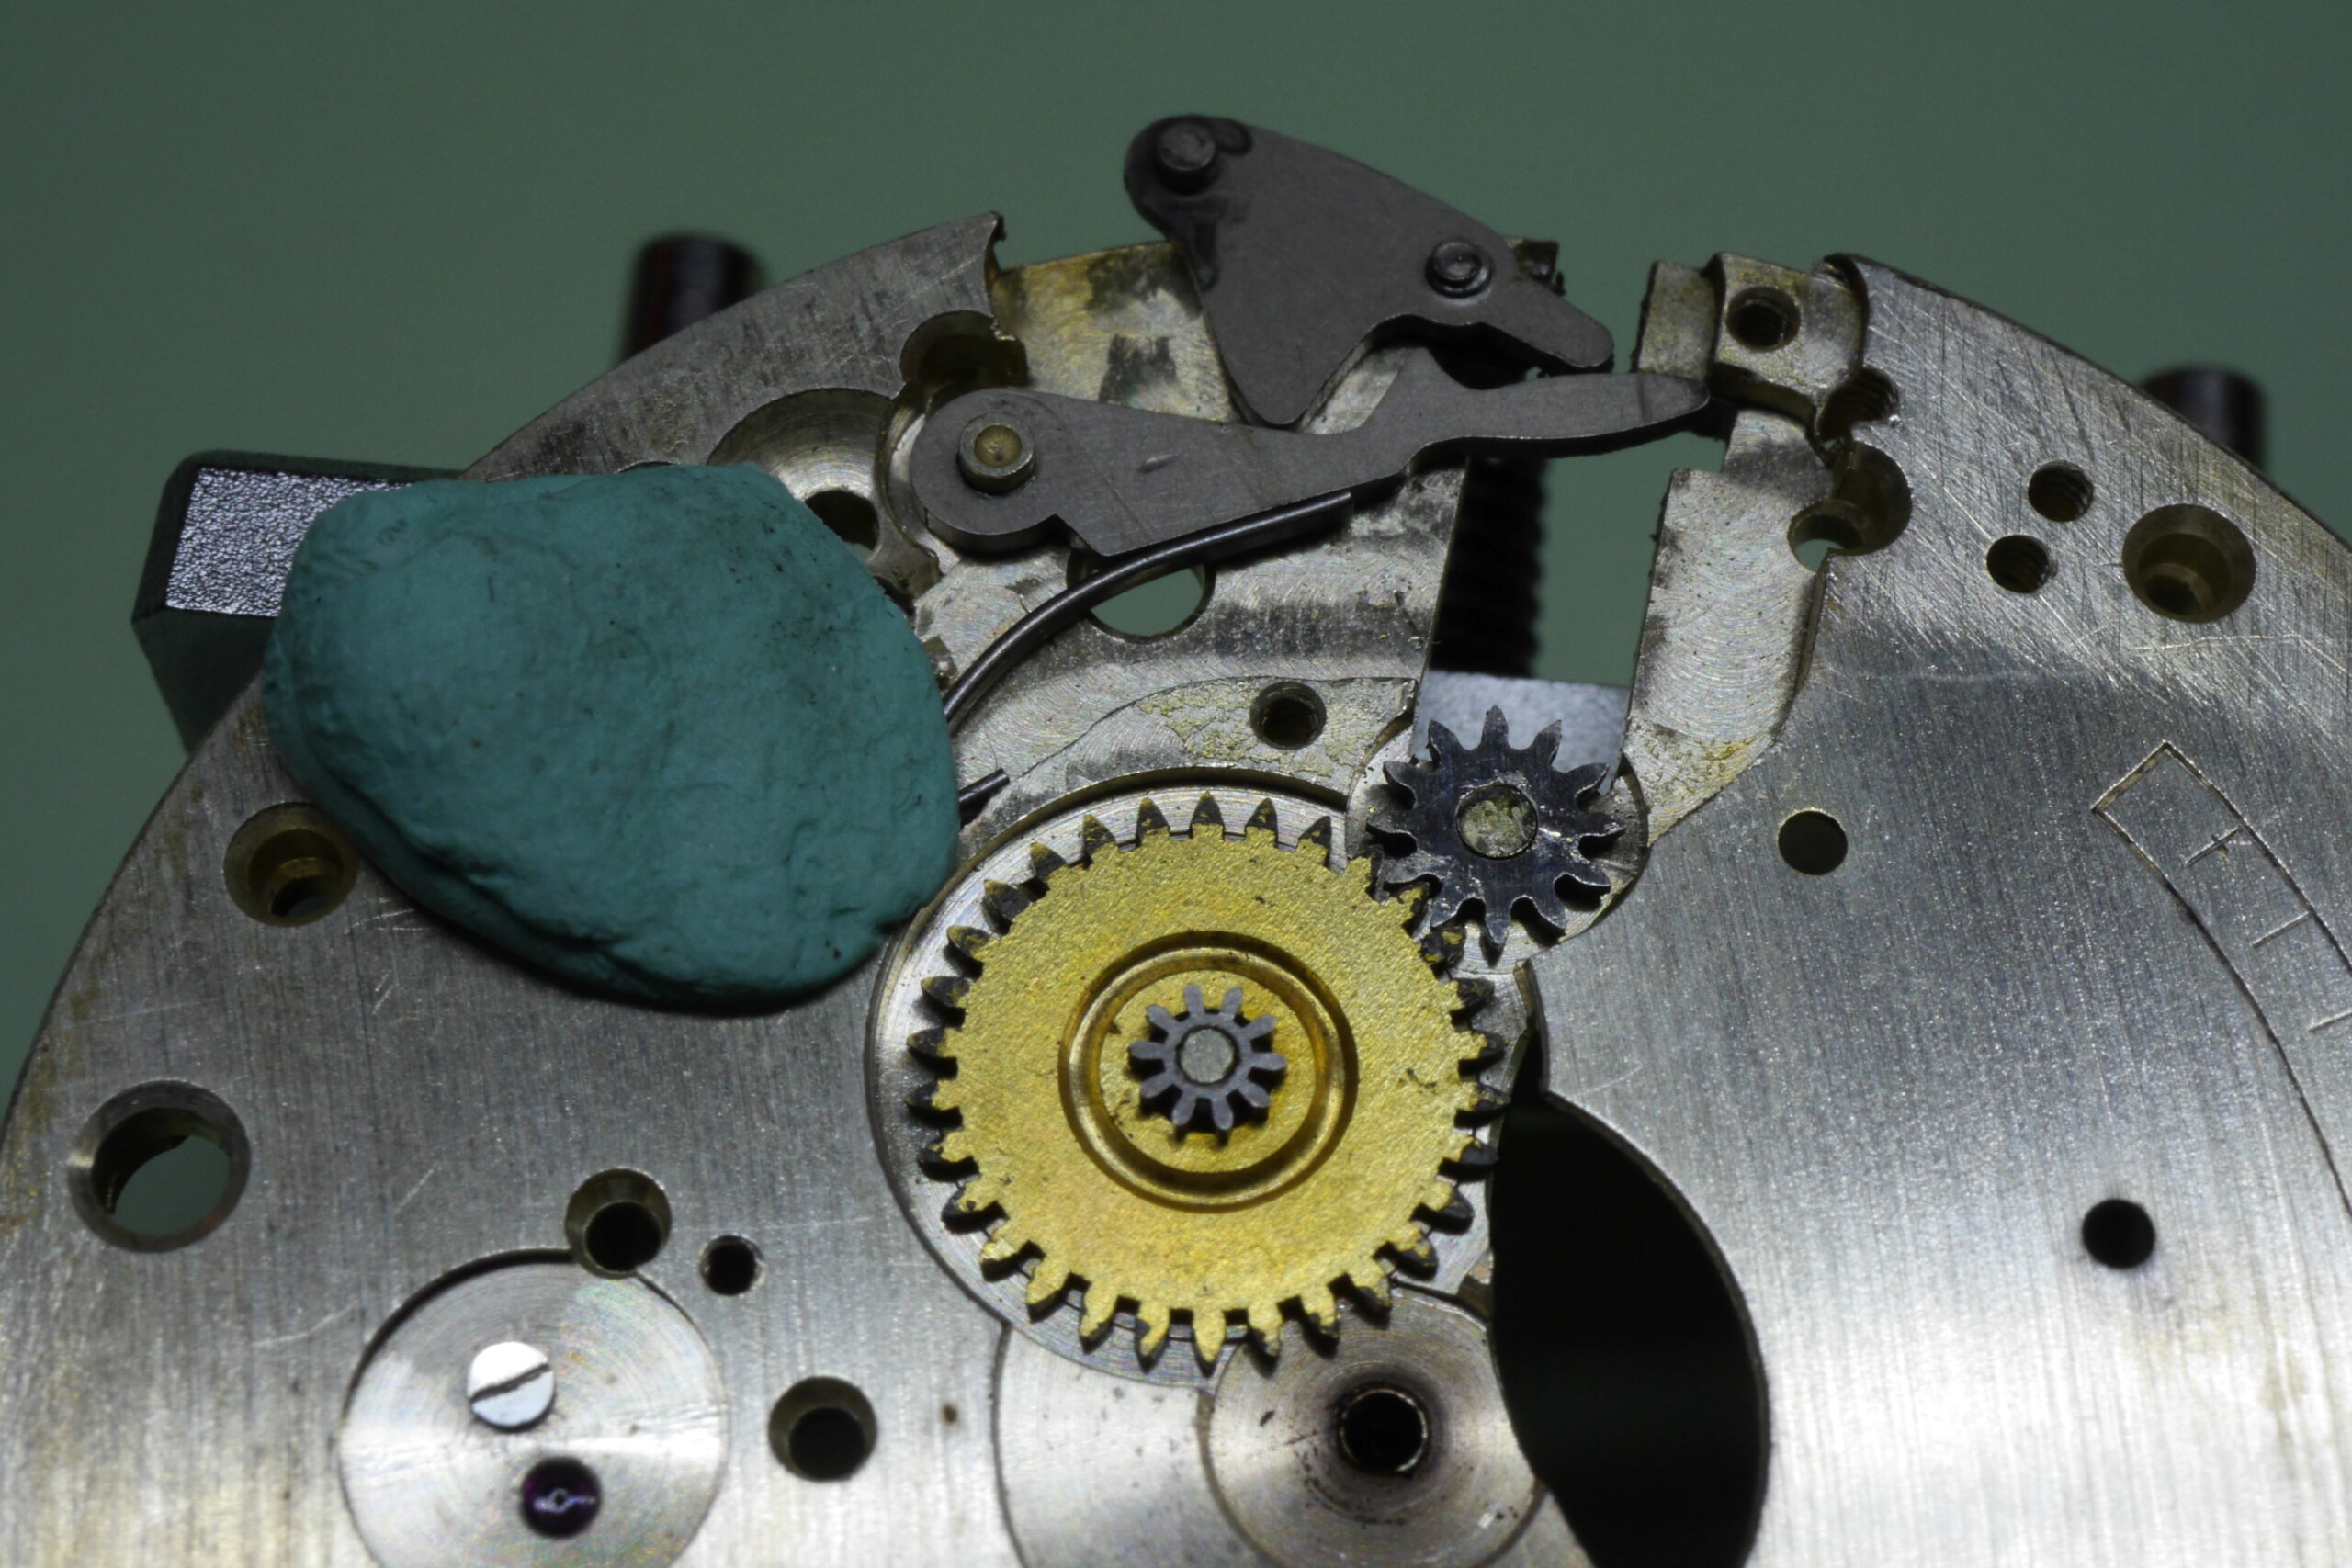 Réparation et entretien d'une montre de poche S.F.L (société française longines) 5810